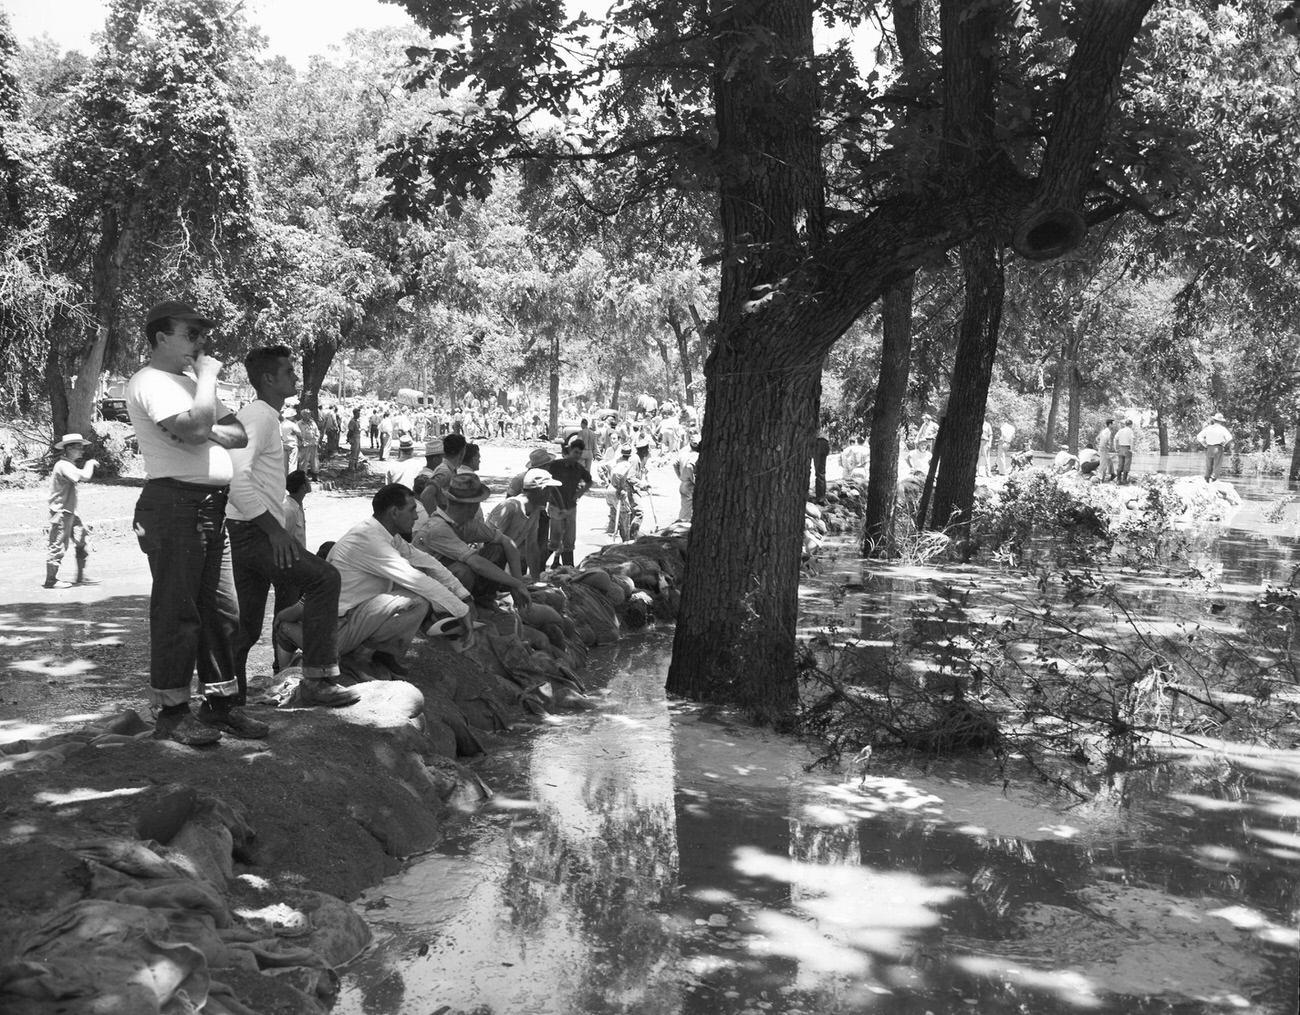 Flood damage at a park, 1949. Men observing the flood damage.